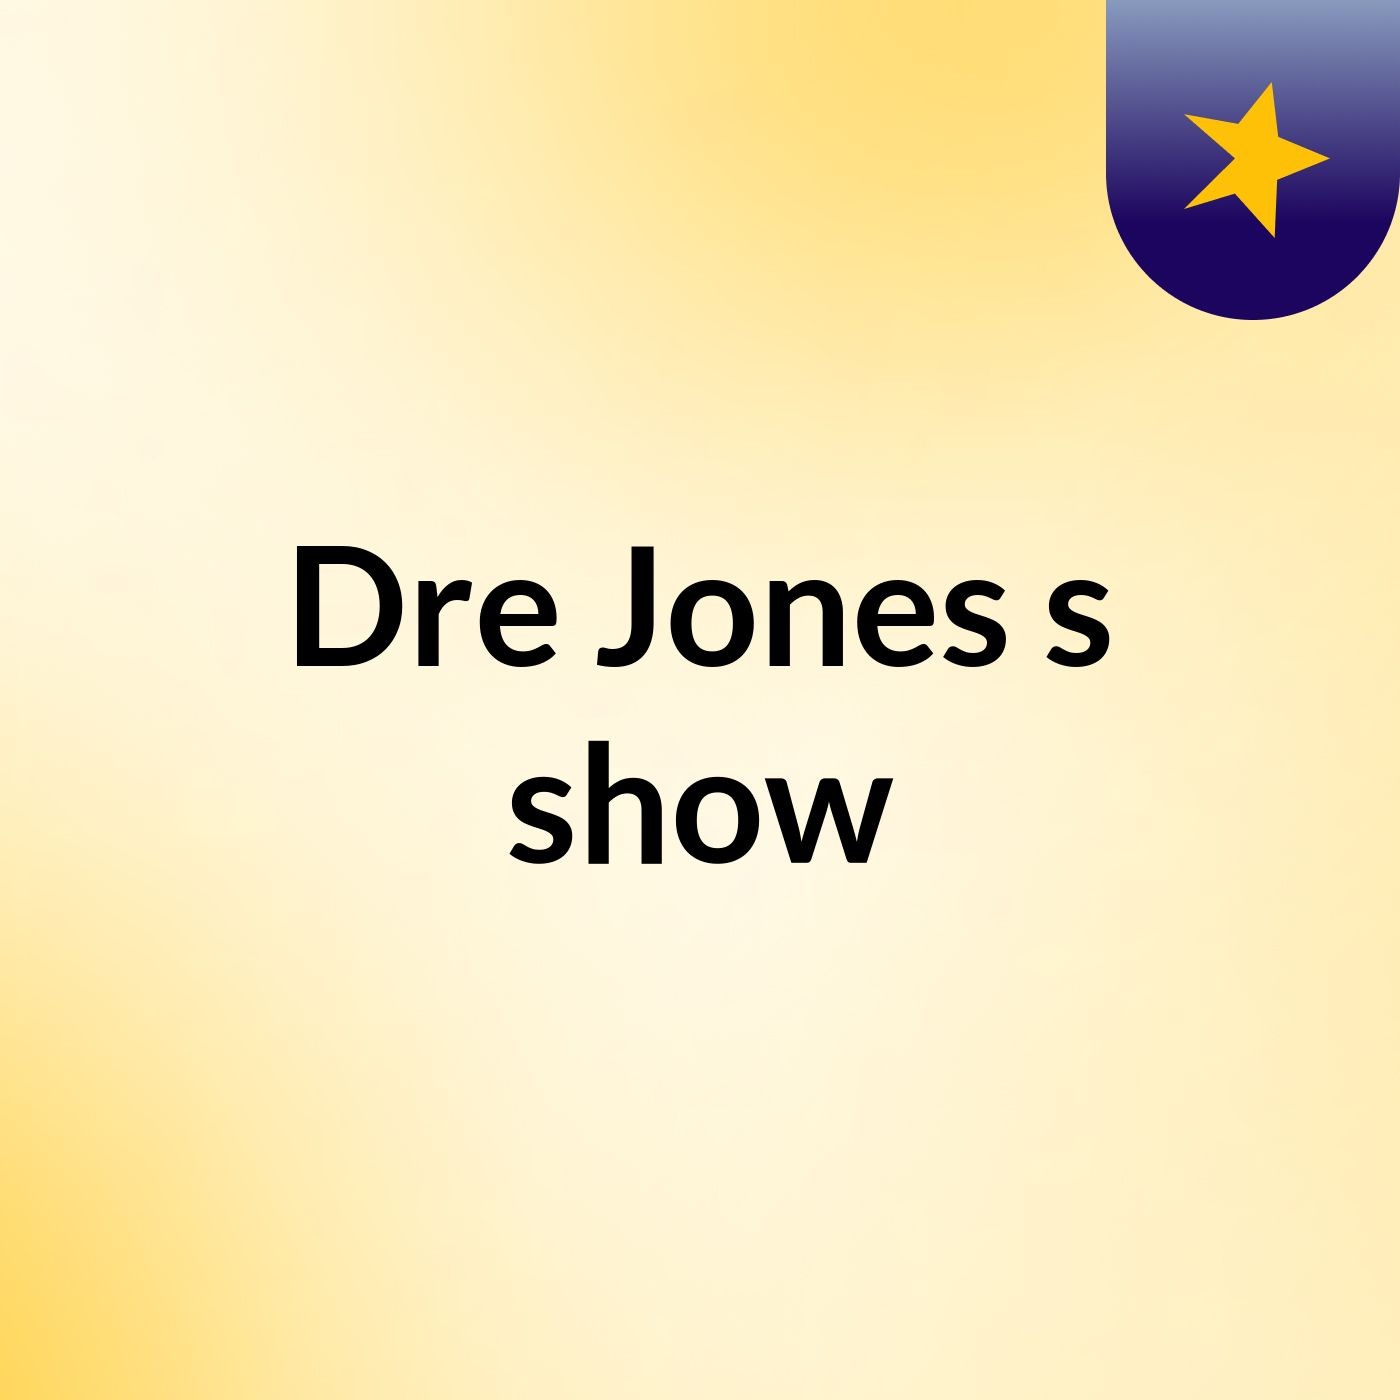 Dre Jones's show